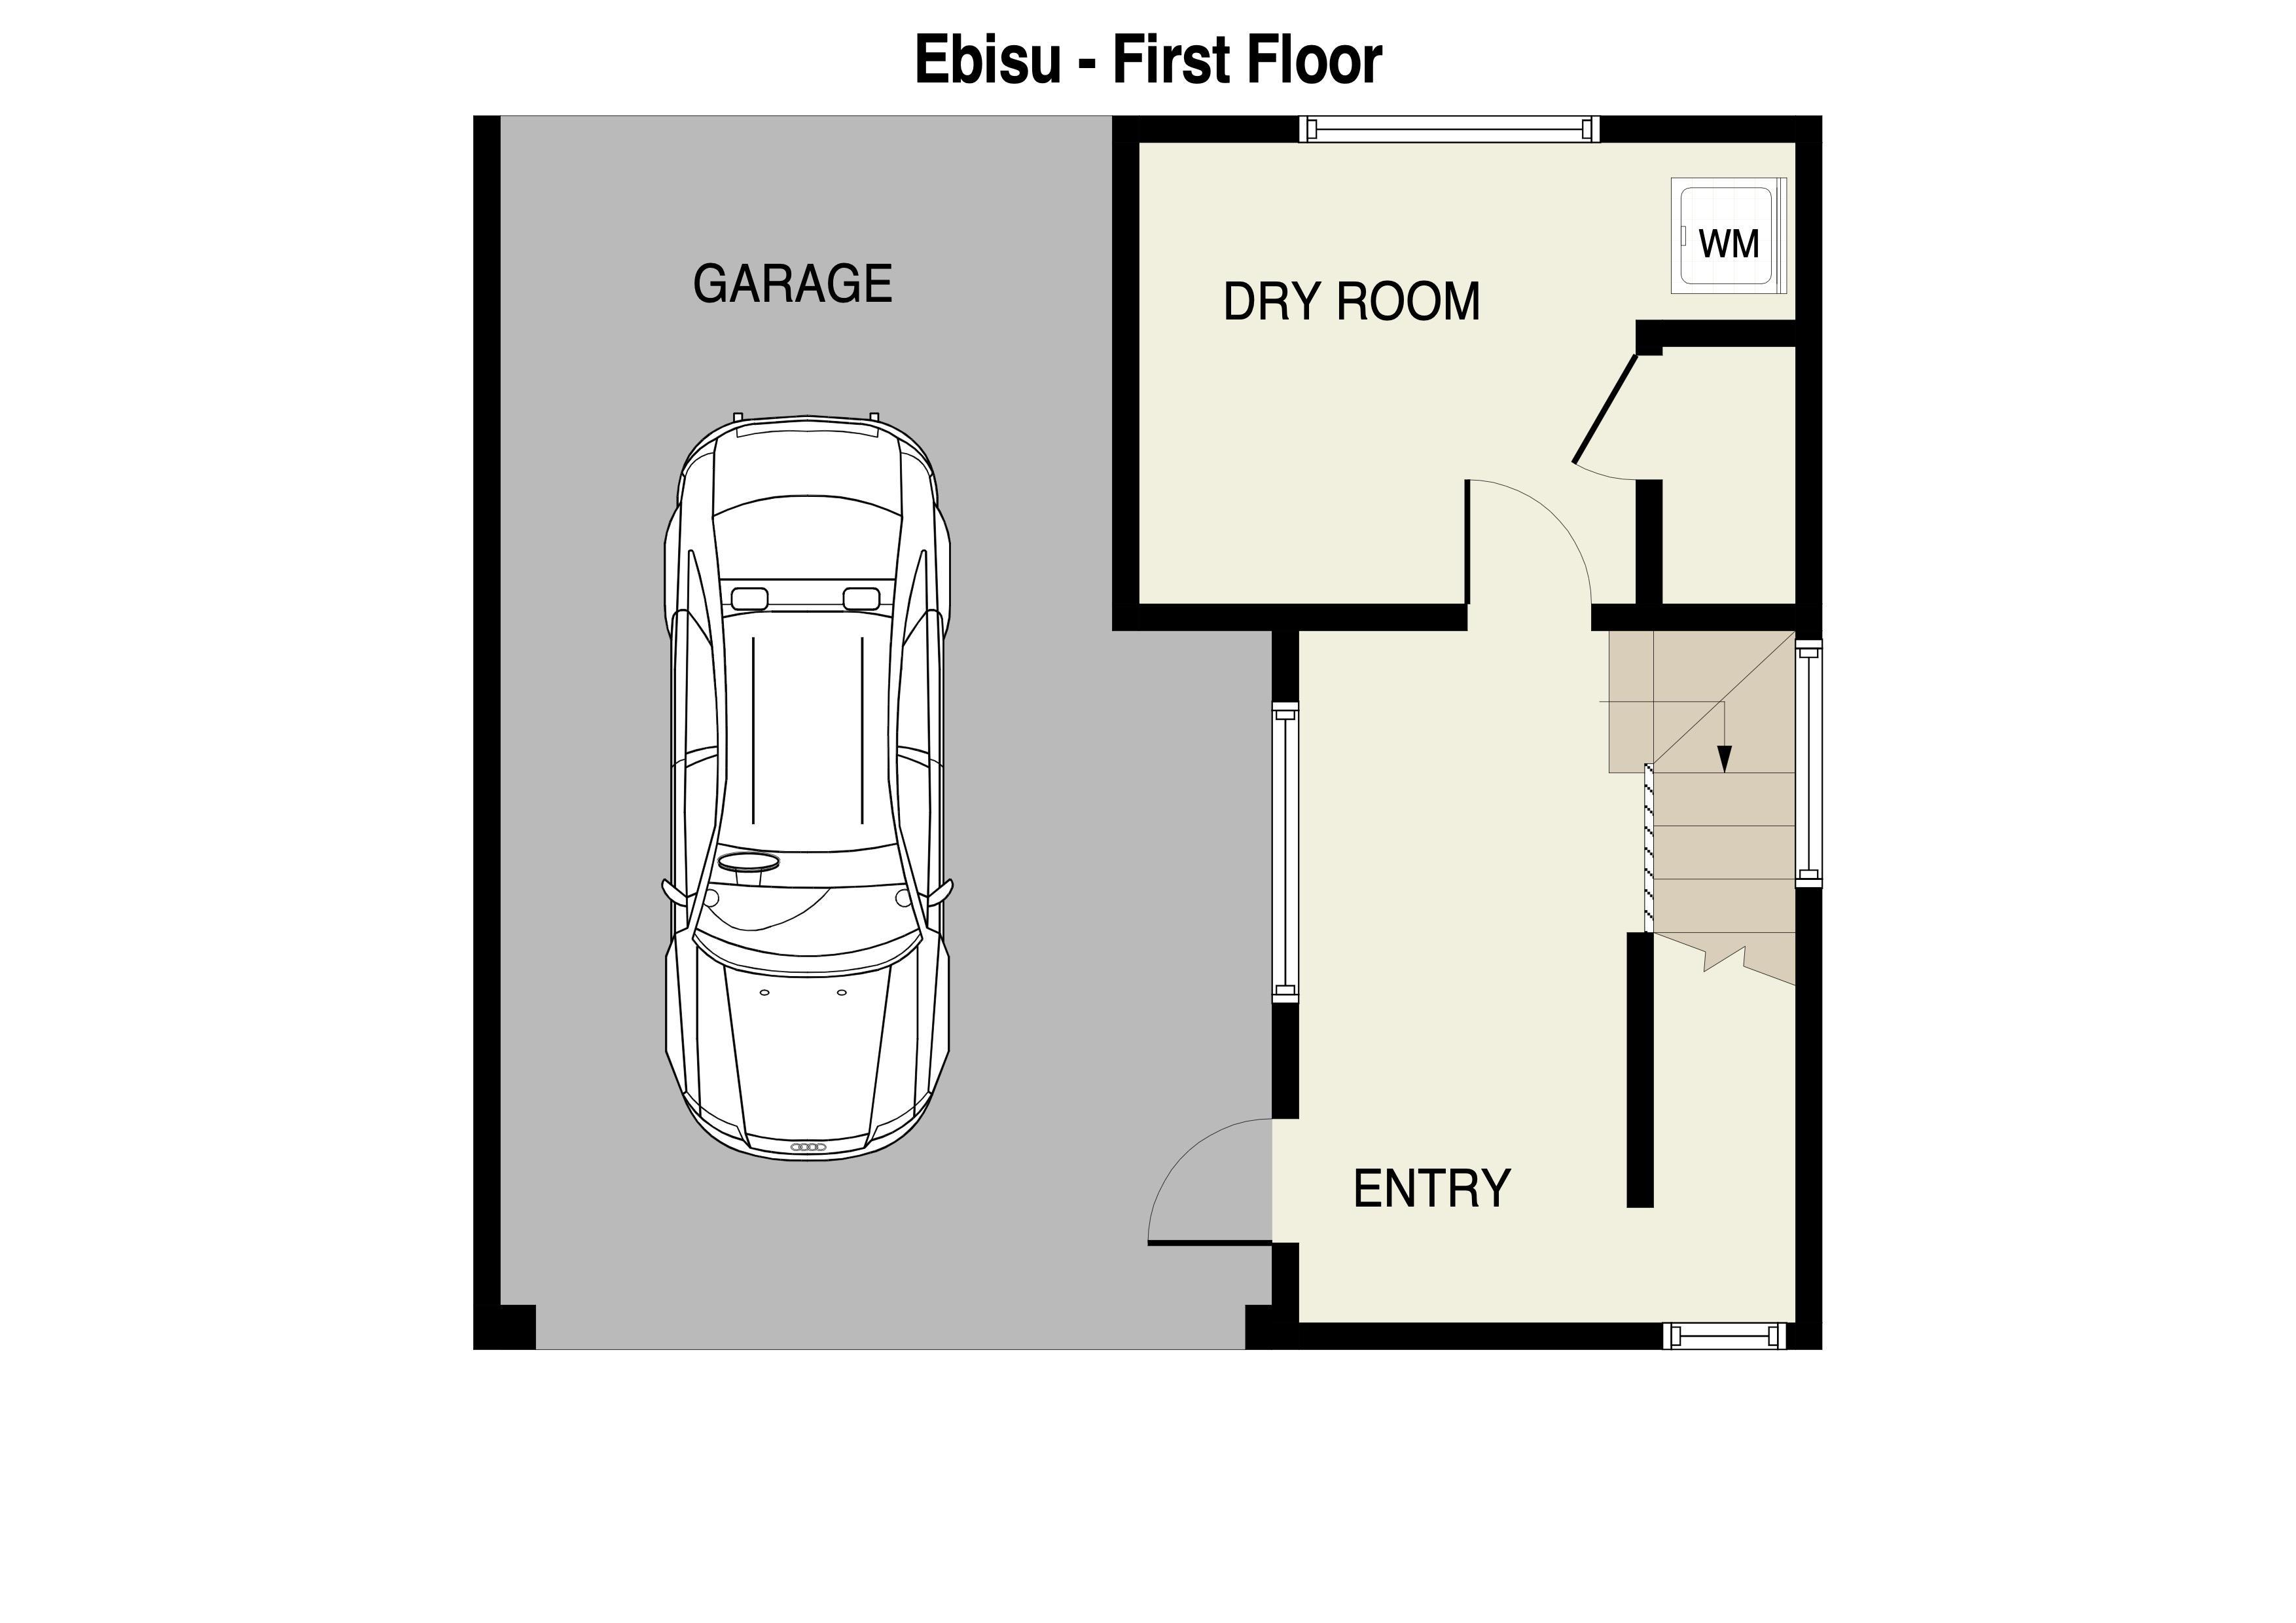 Ebisu 1st Floor Plan